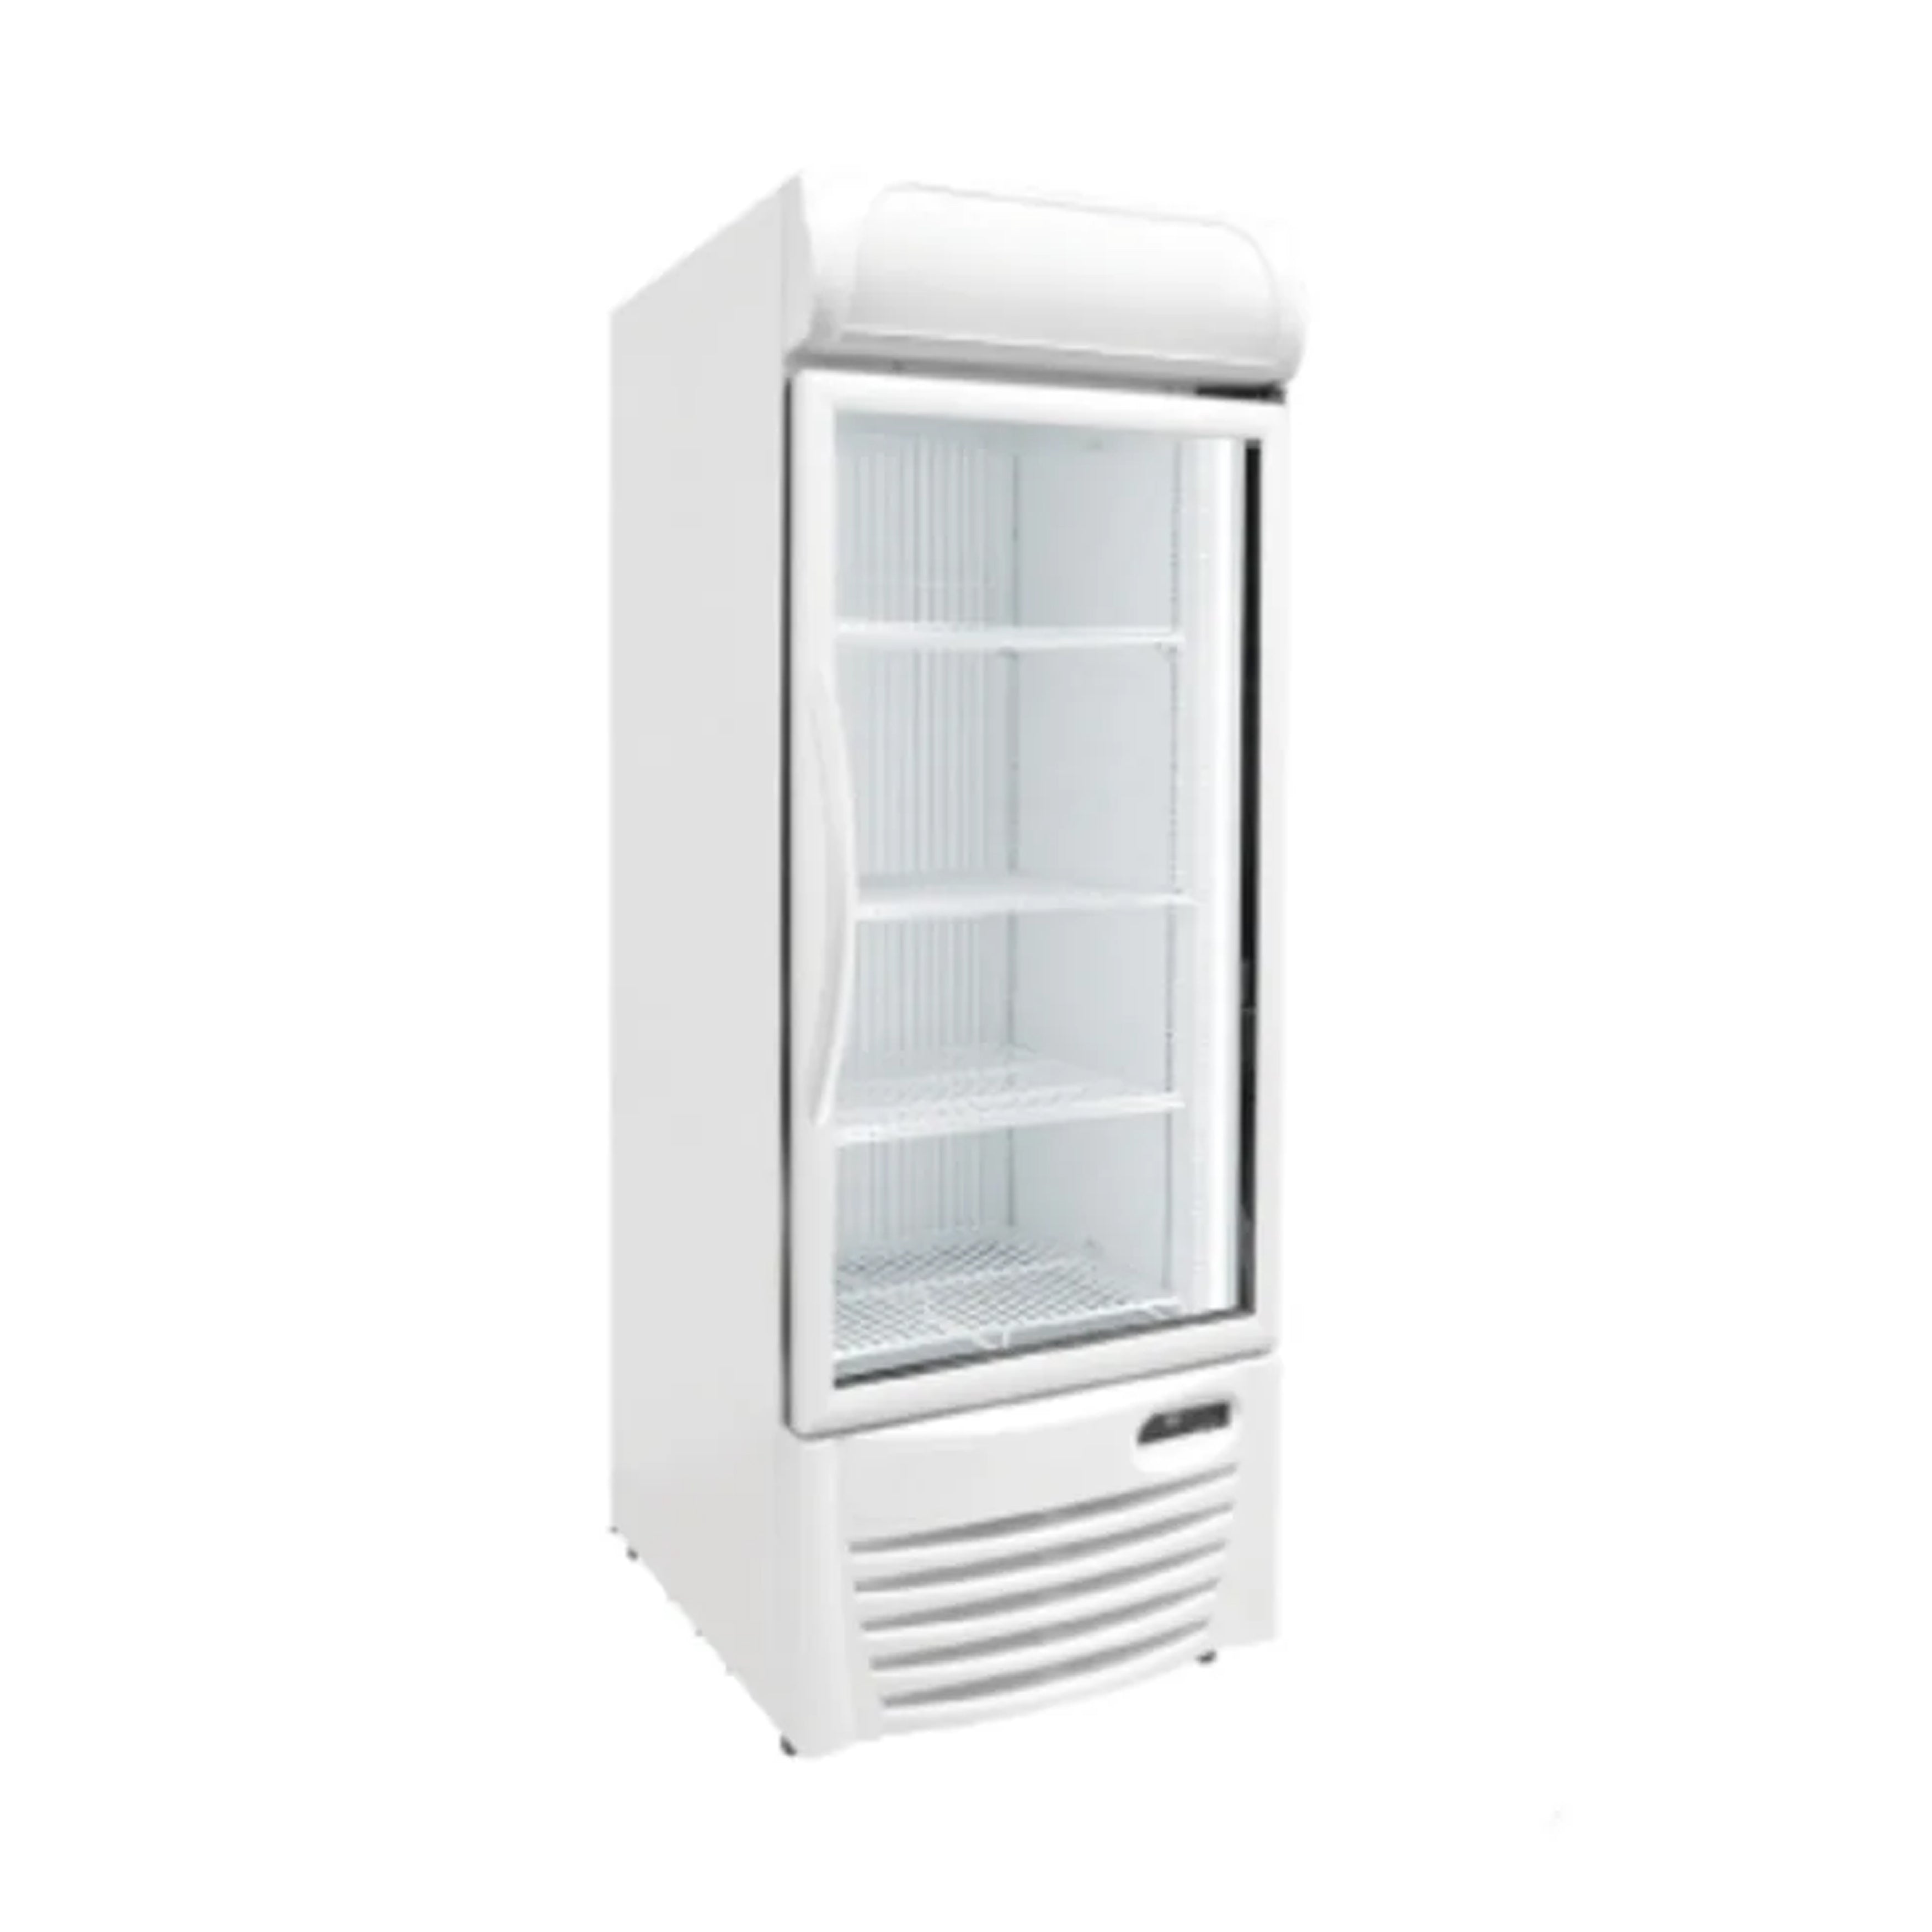 Excellence Industries - GDF-13, 26" Commercial 1 Glass Door Merchandiser Freezer 12 cu.ft.